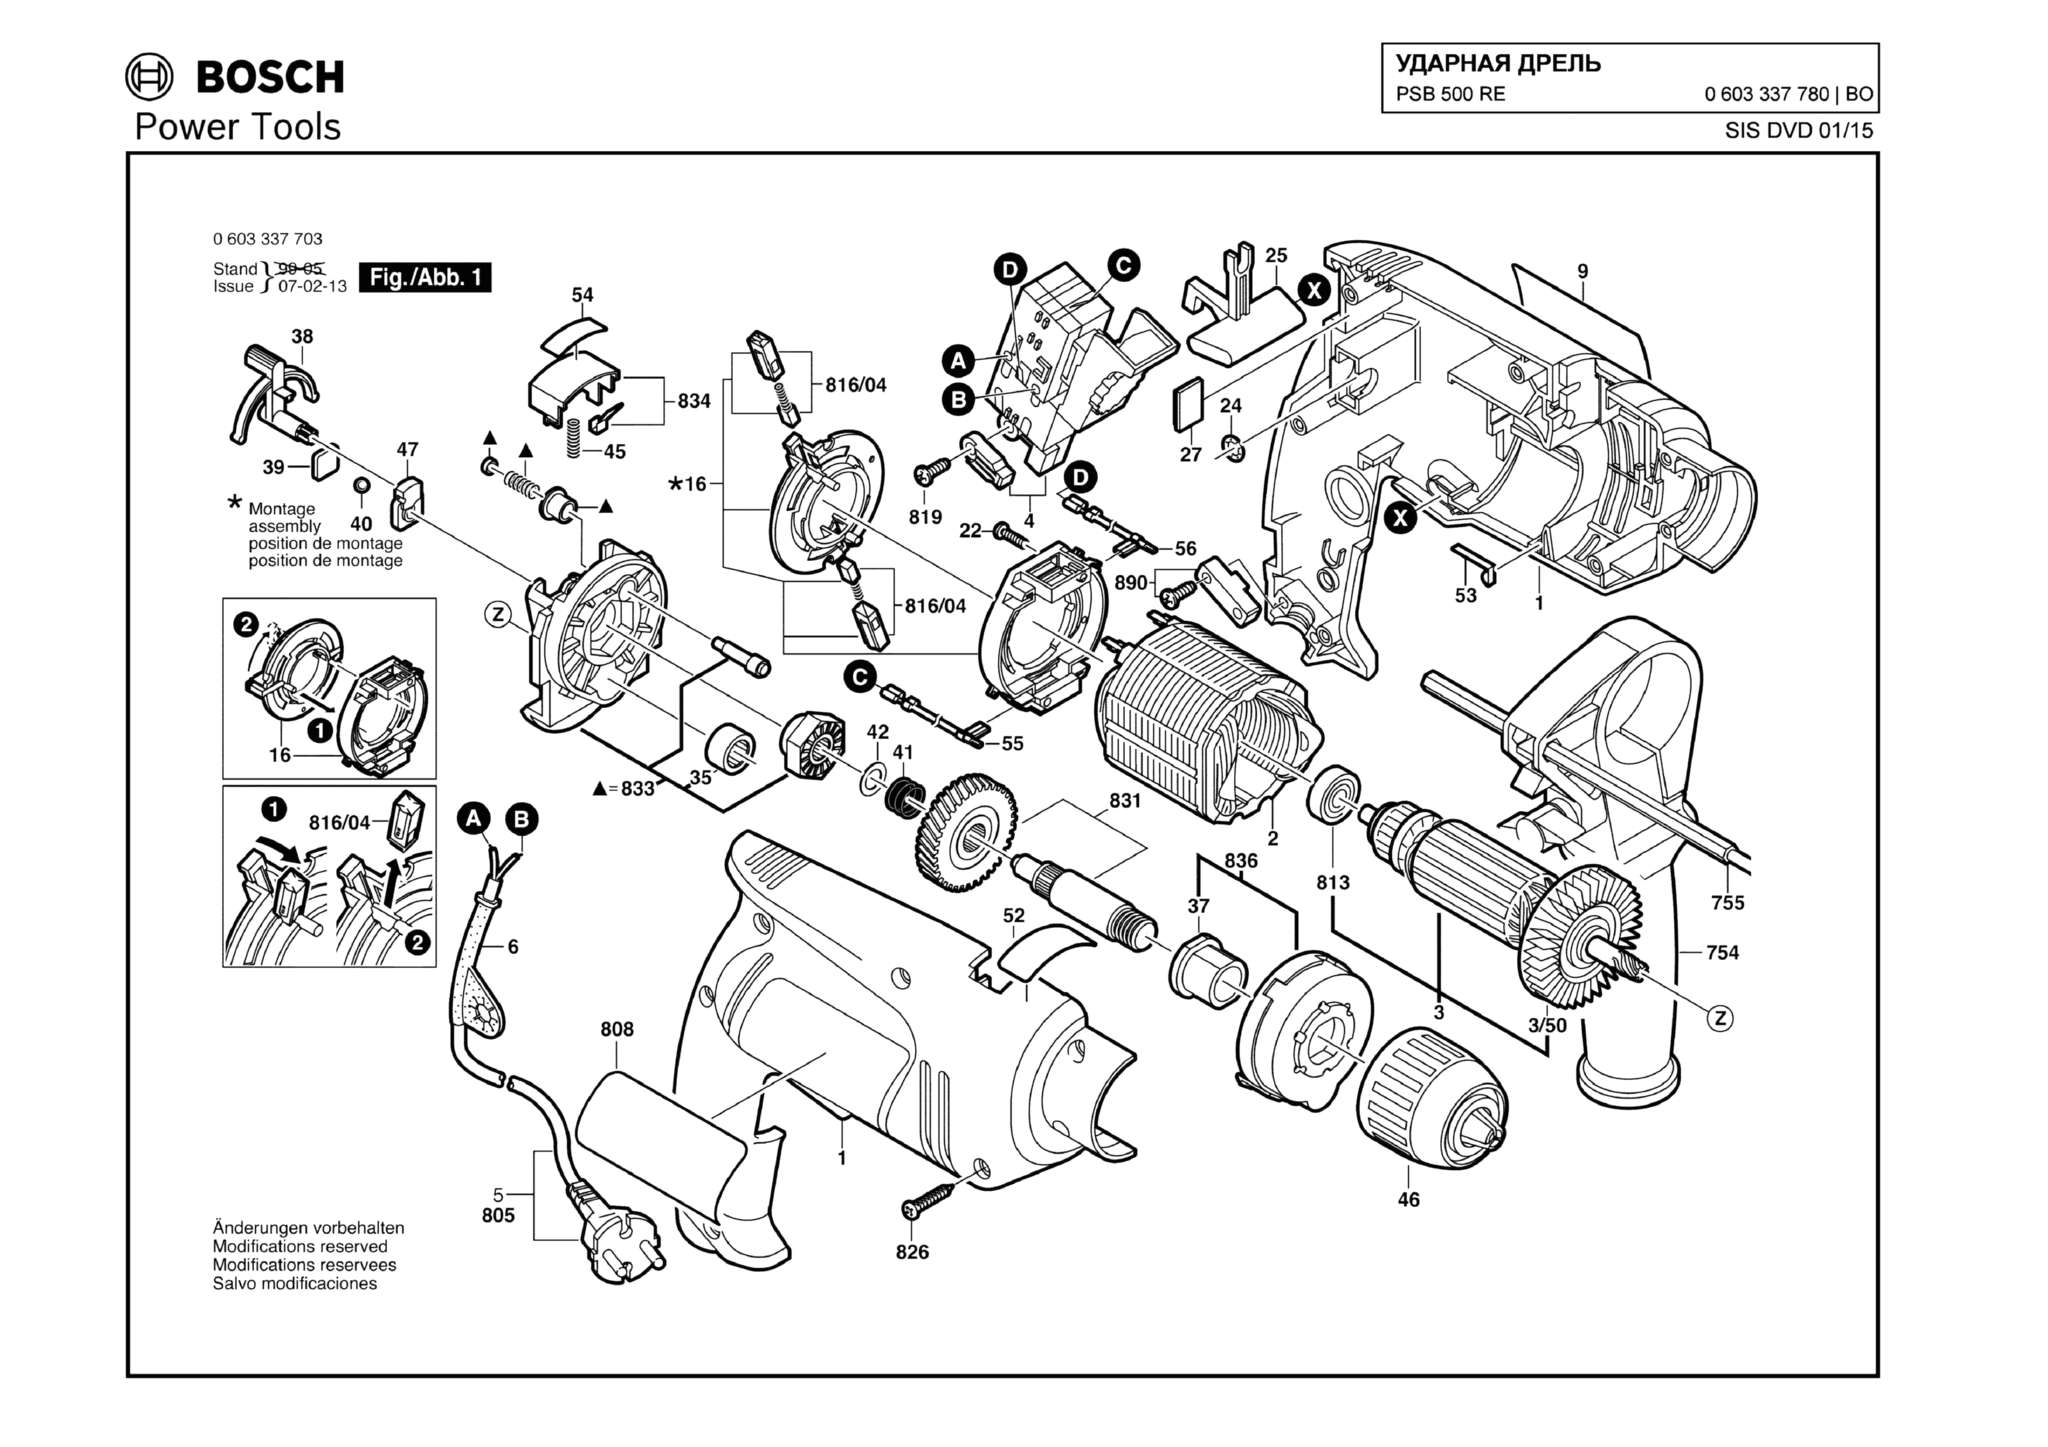 Запчасти, схема и деталировка Bosch PSB 500 RE (ТИП 0603337780)